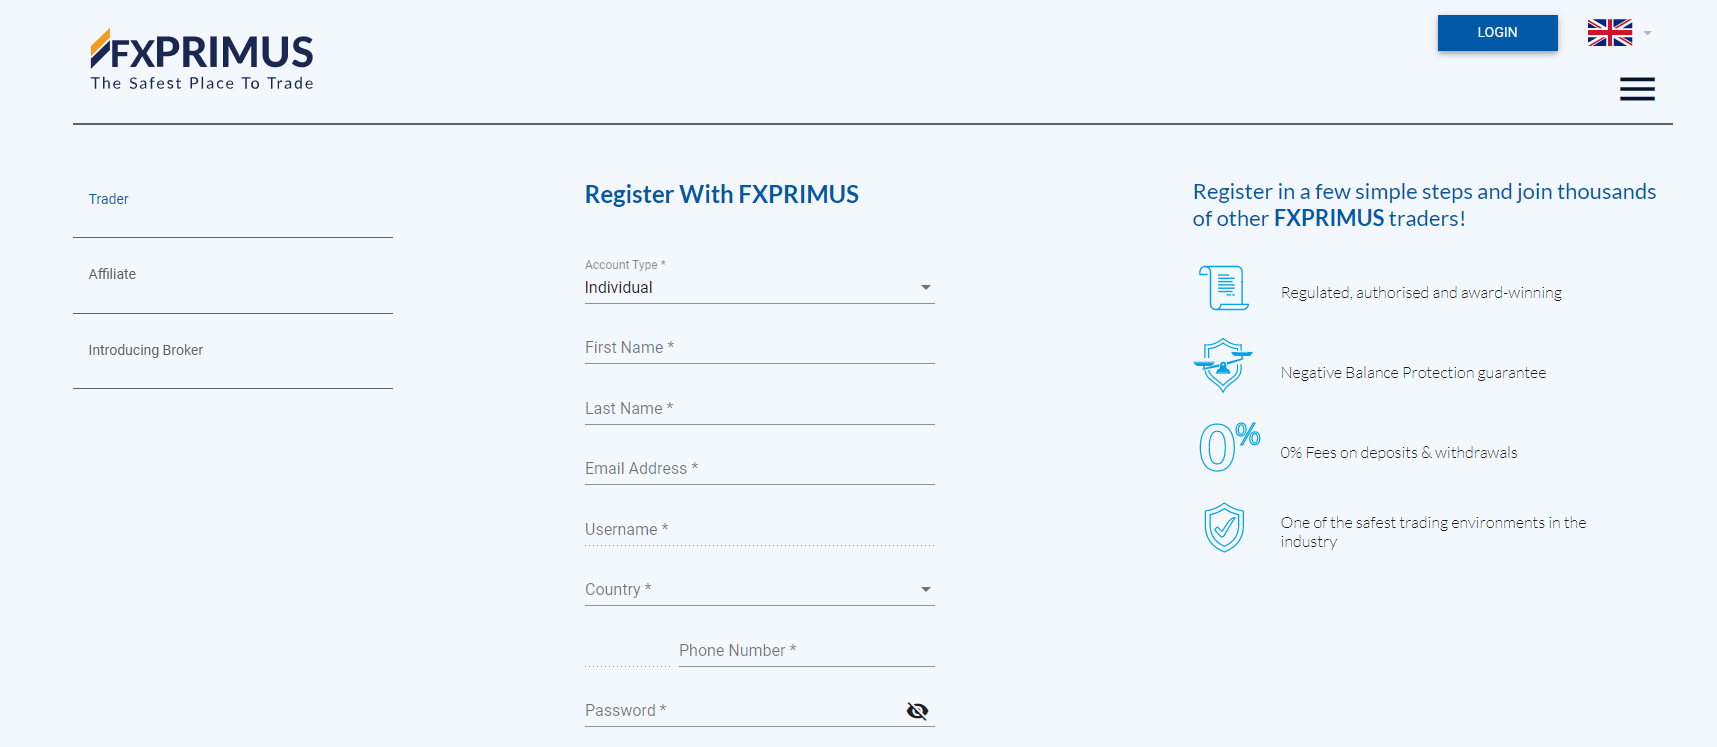 Registra il tuo account gratuito con FXPRIMUS